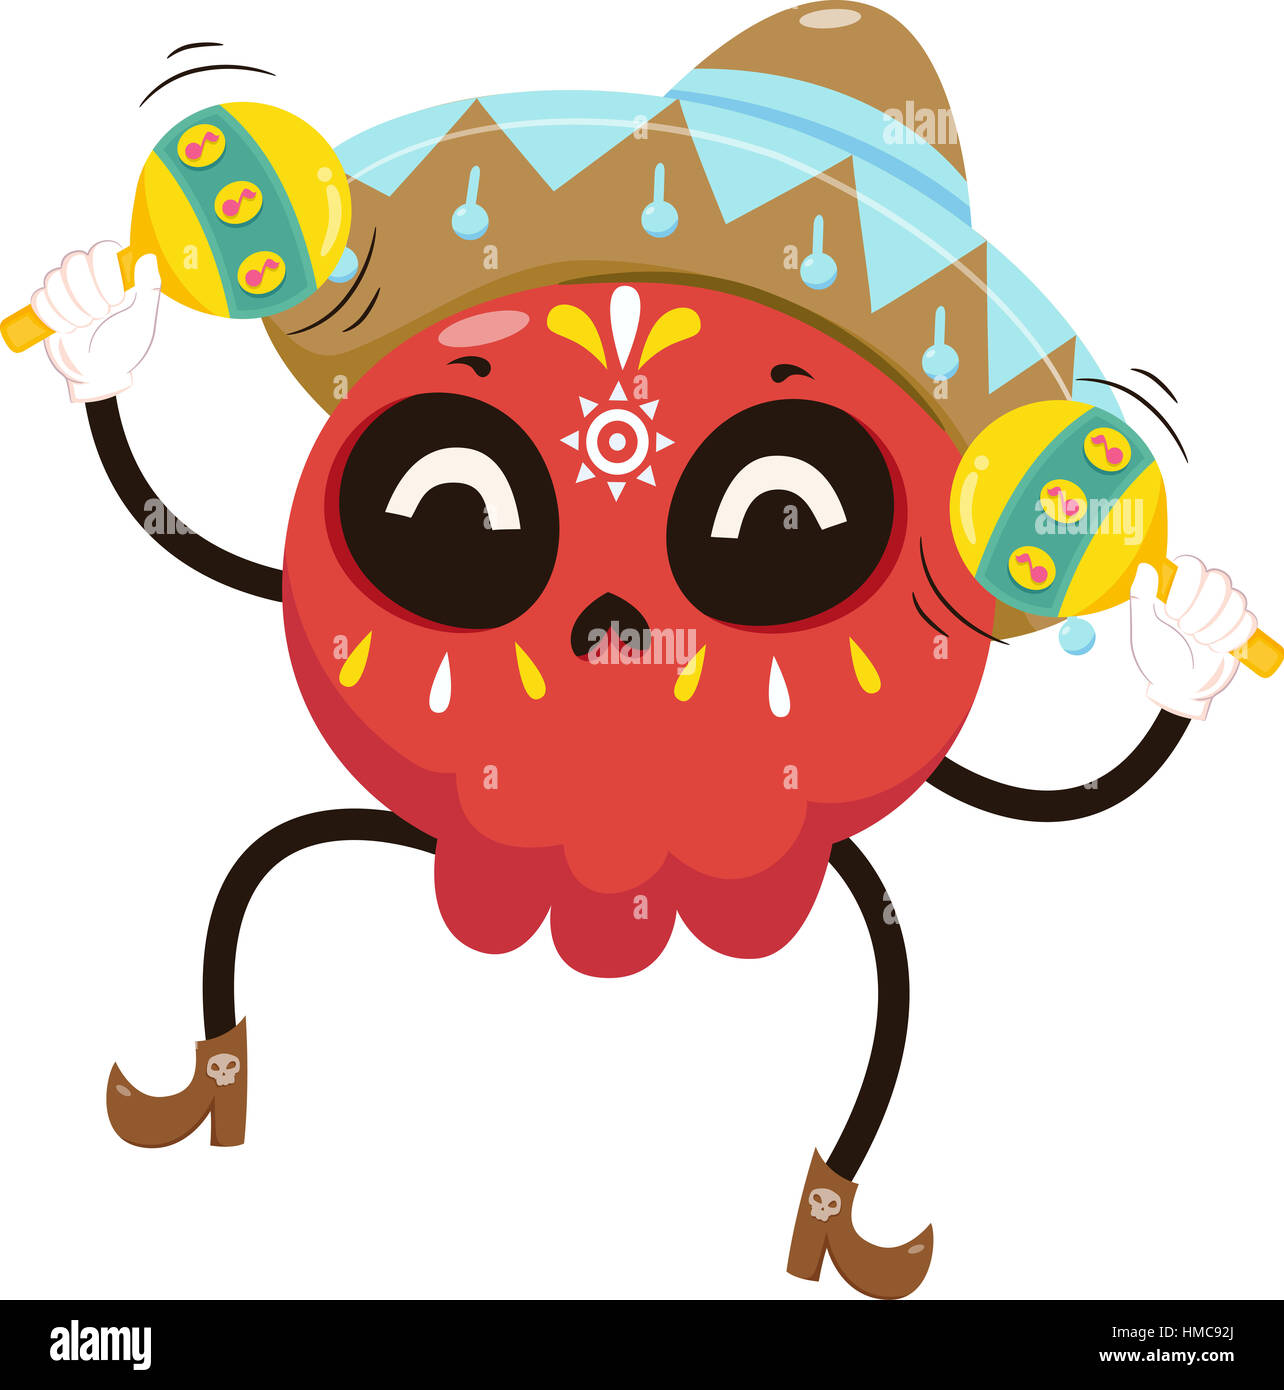 Mascot Illustration d'un crâne en sucre coloré vêtu d'un costume de Mariachi jouant avec les Maracas Banque D'Images